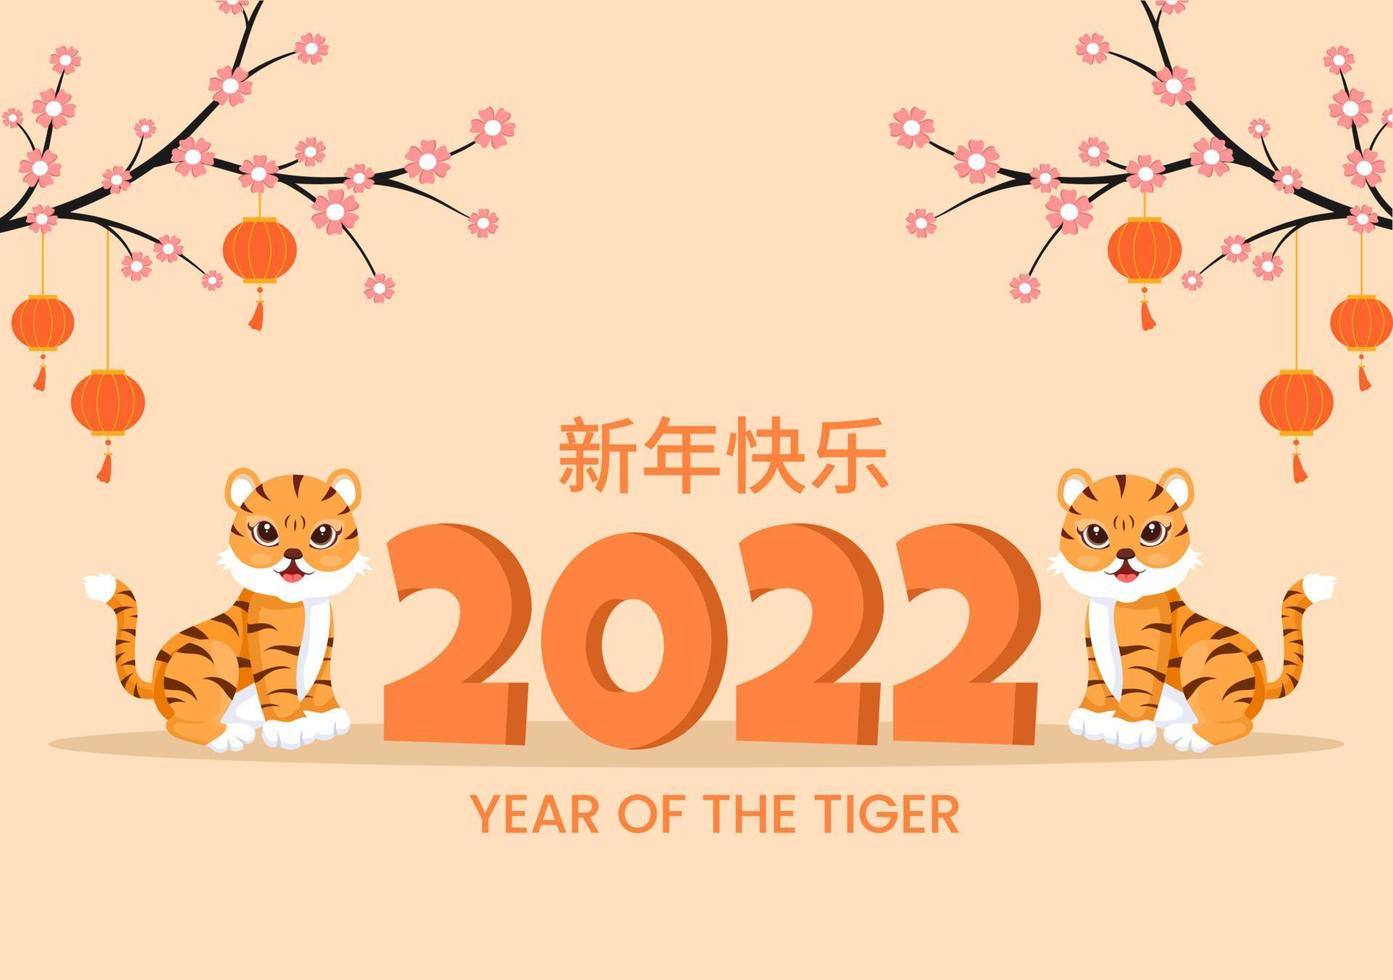 Gelukkig Chinees Nieuwjaar 2022 met dierenriem schattige tijger en bloem op rode achtergrond voor wenskaart, kalender of poster in platte ontwerp illustratie vector